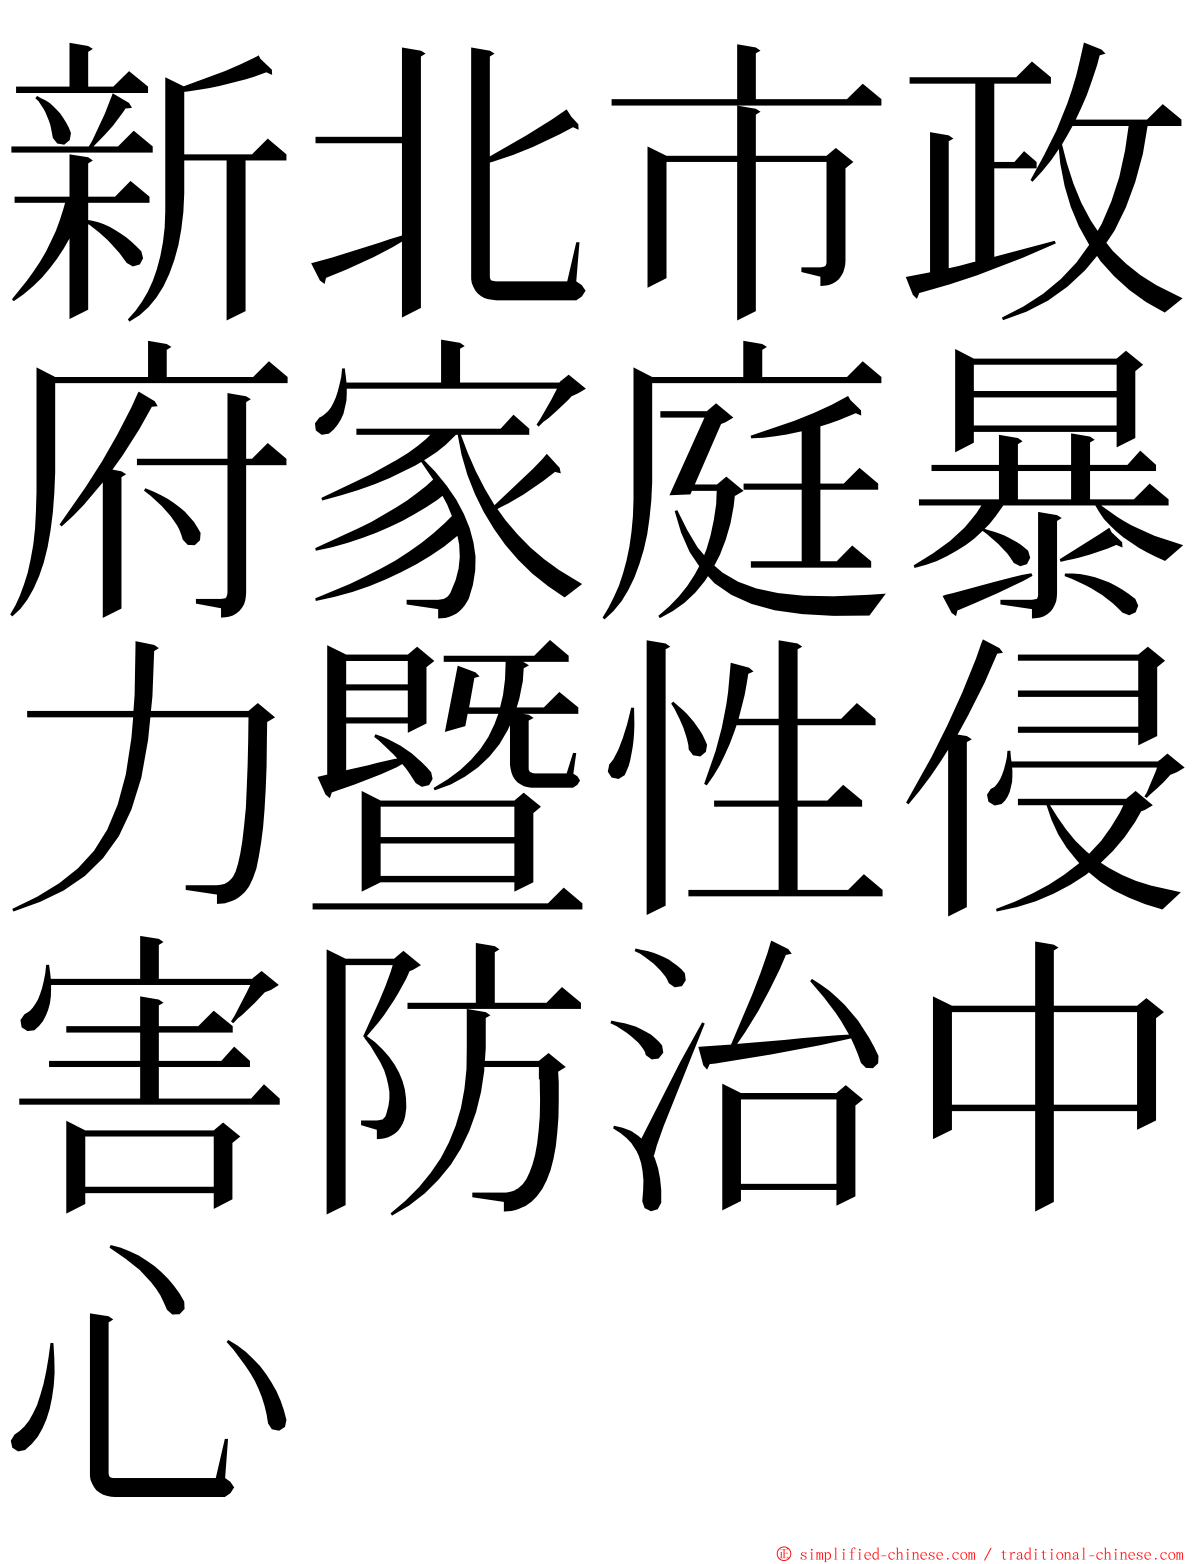 新北市政府家庭暴力暨性侵害防治中心 ming font